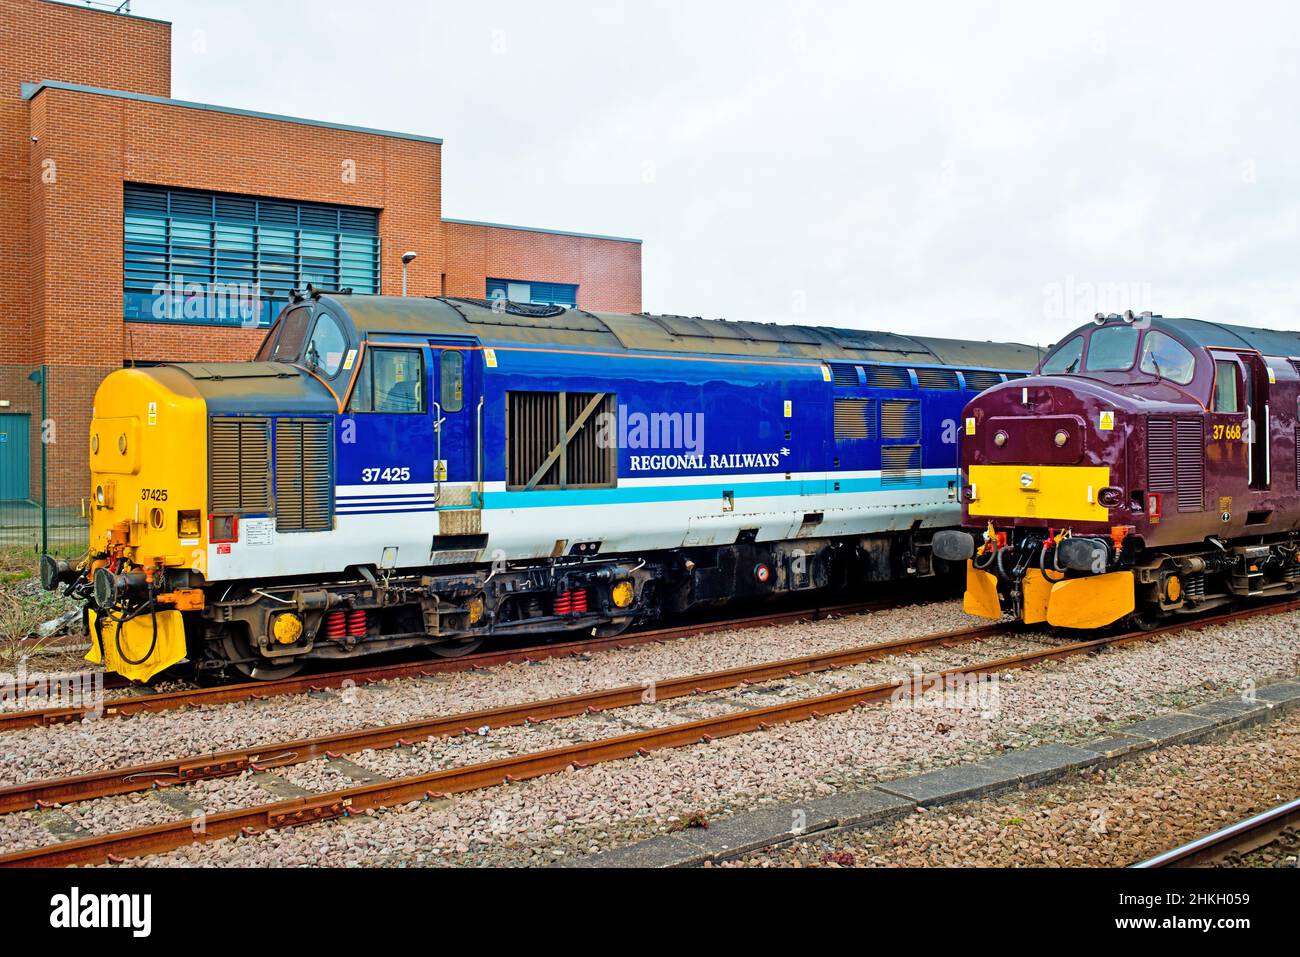 Locomotora de clase 37 425 y locomotora de clase 37668 de los Ferrocarriles Regionales de la Costa Oeste con sistema de estibada en la estación de tren de York, York, Inglaterra Foto de stock